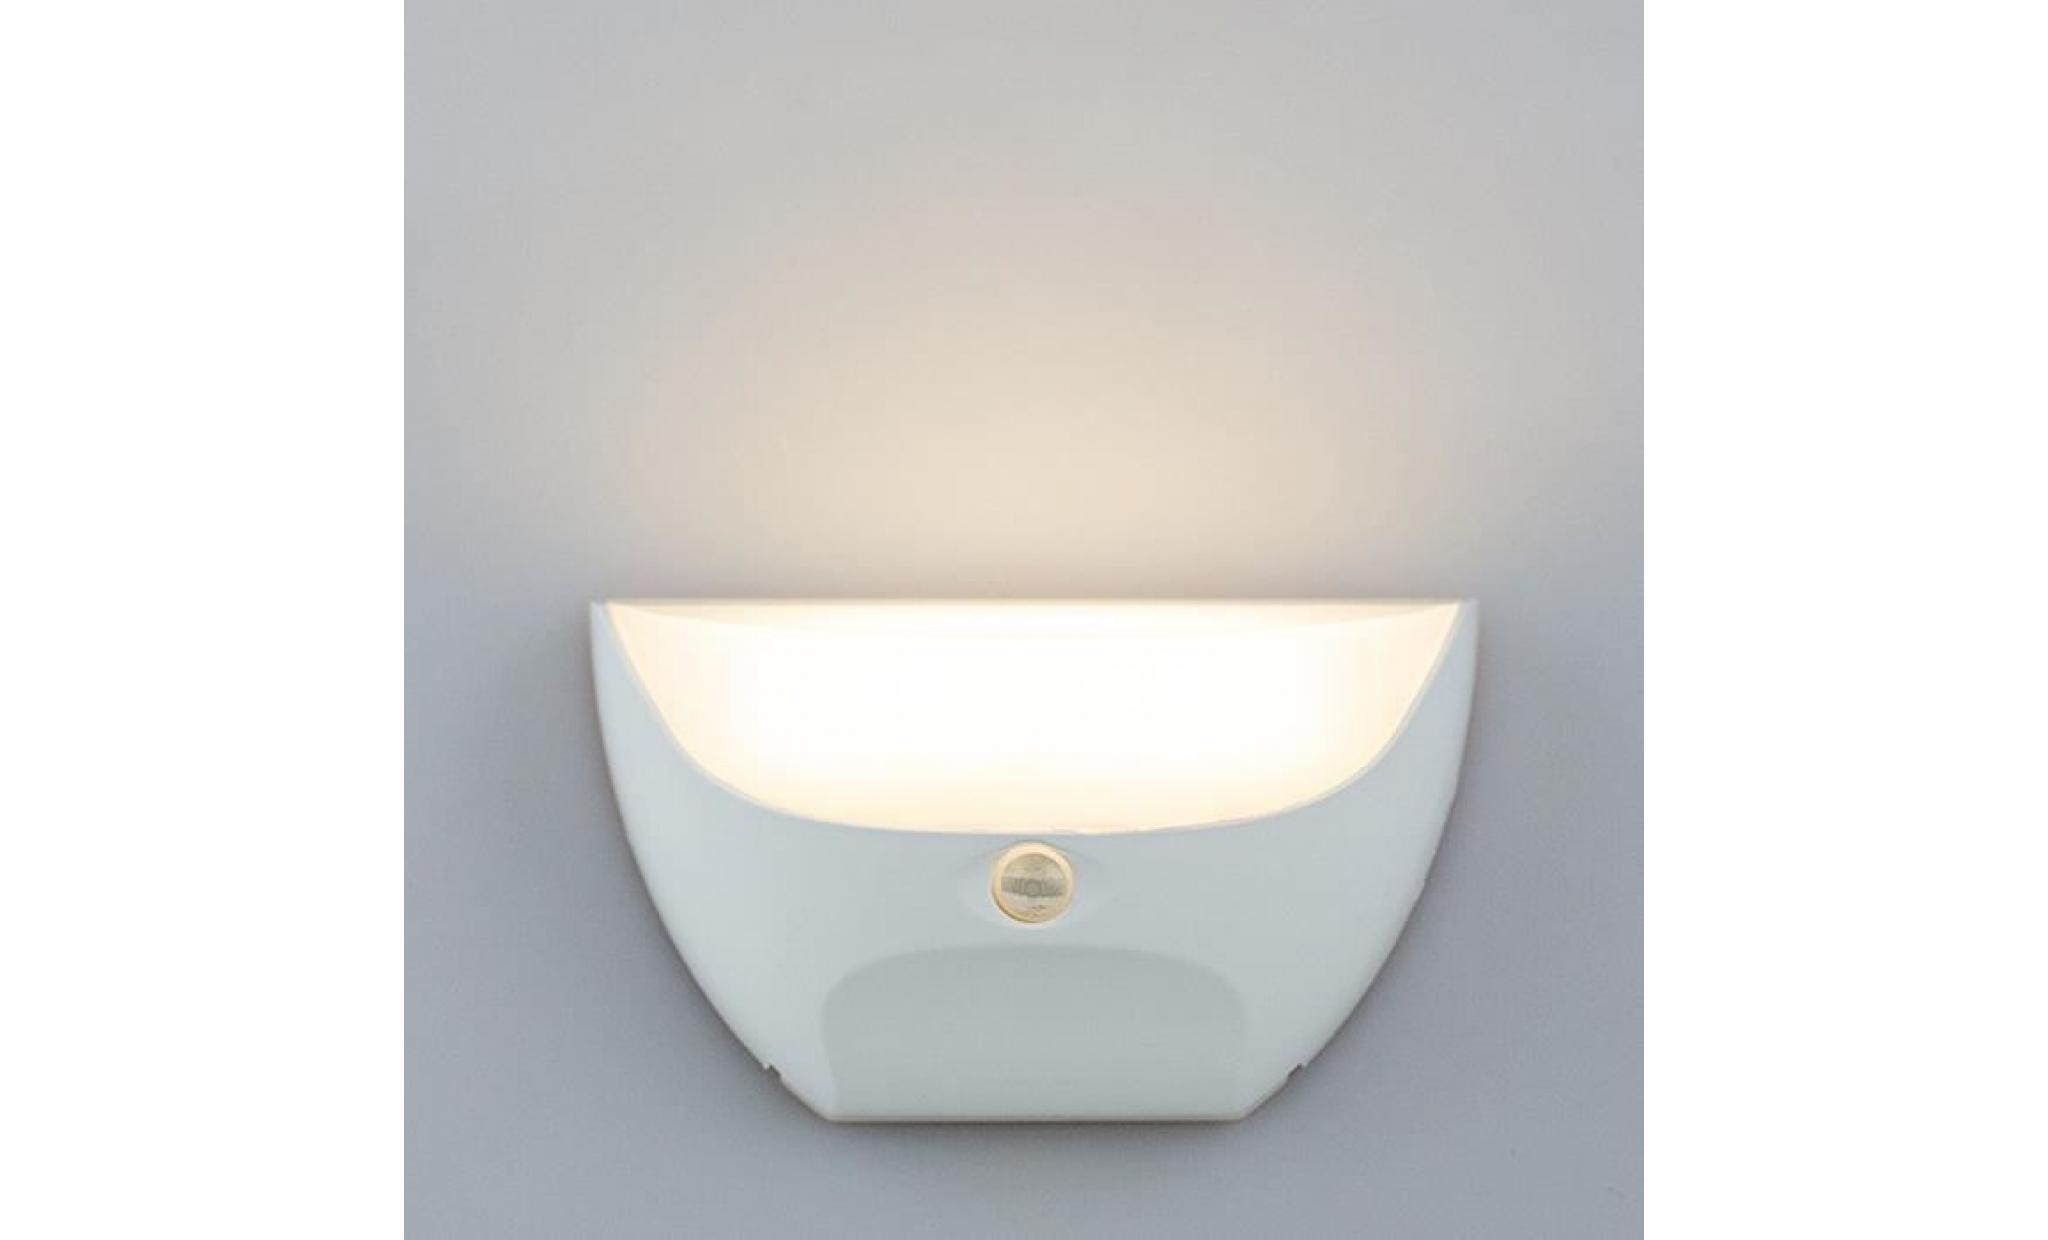 applique exterieure usb rechargeable étanche corridor lumière de nuit corps capteur infrarouge intelligente maison lumières blanc